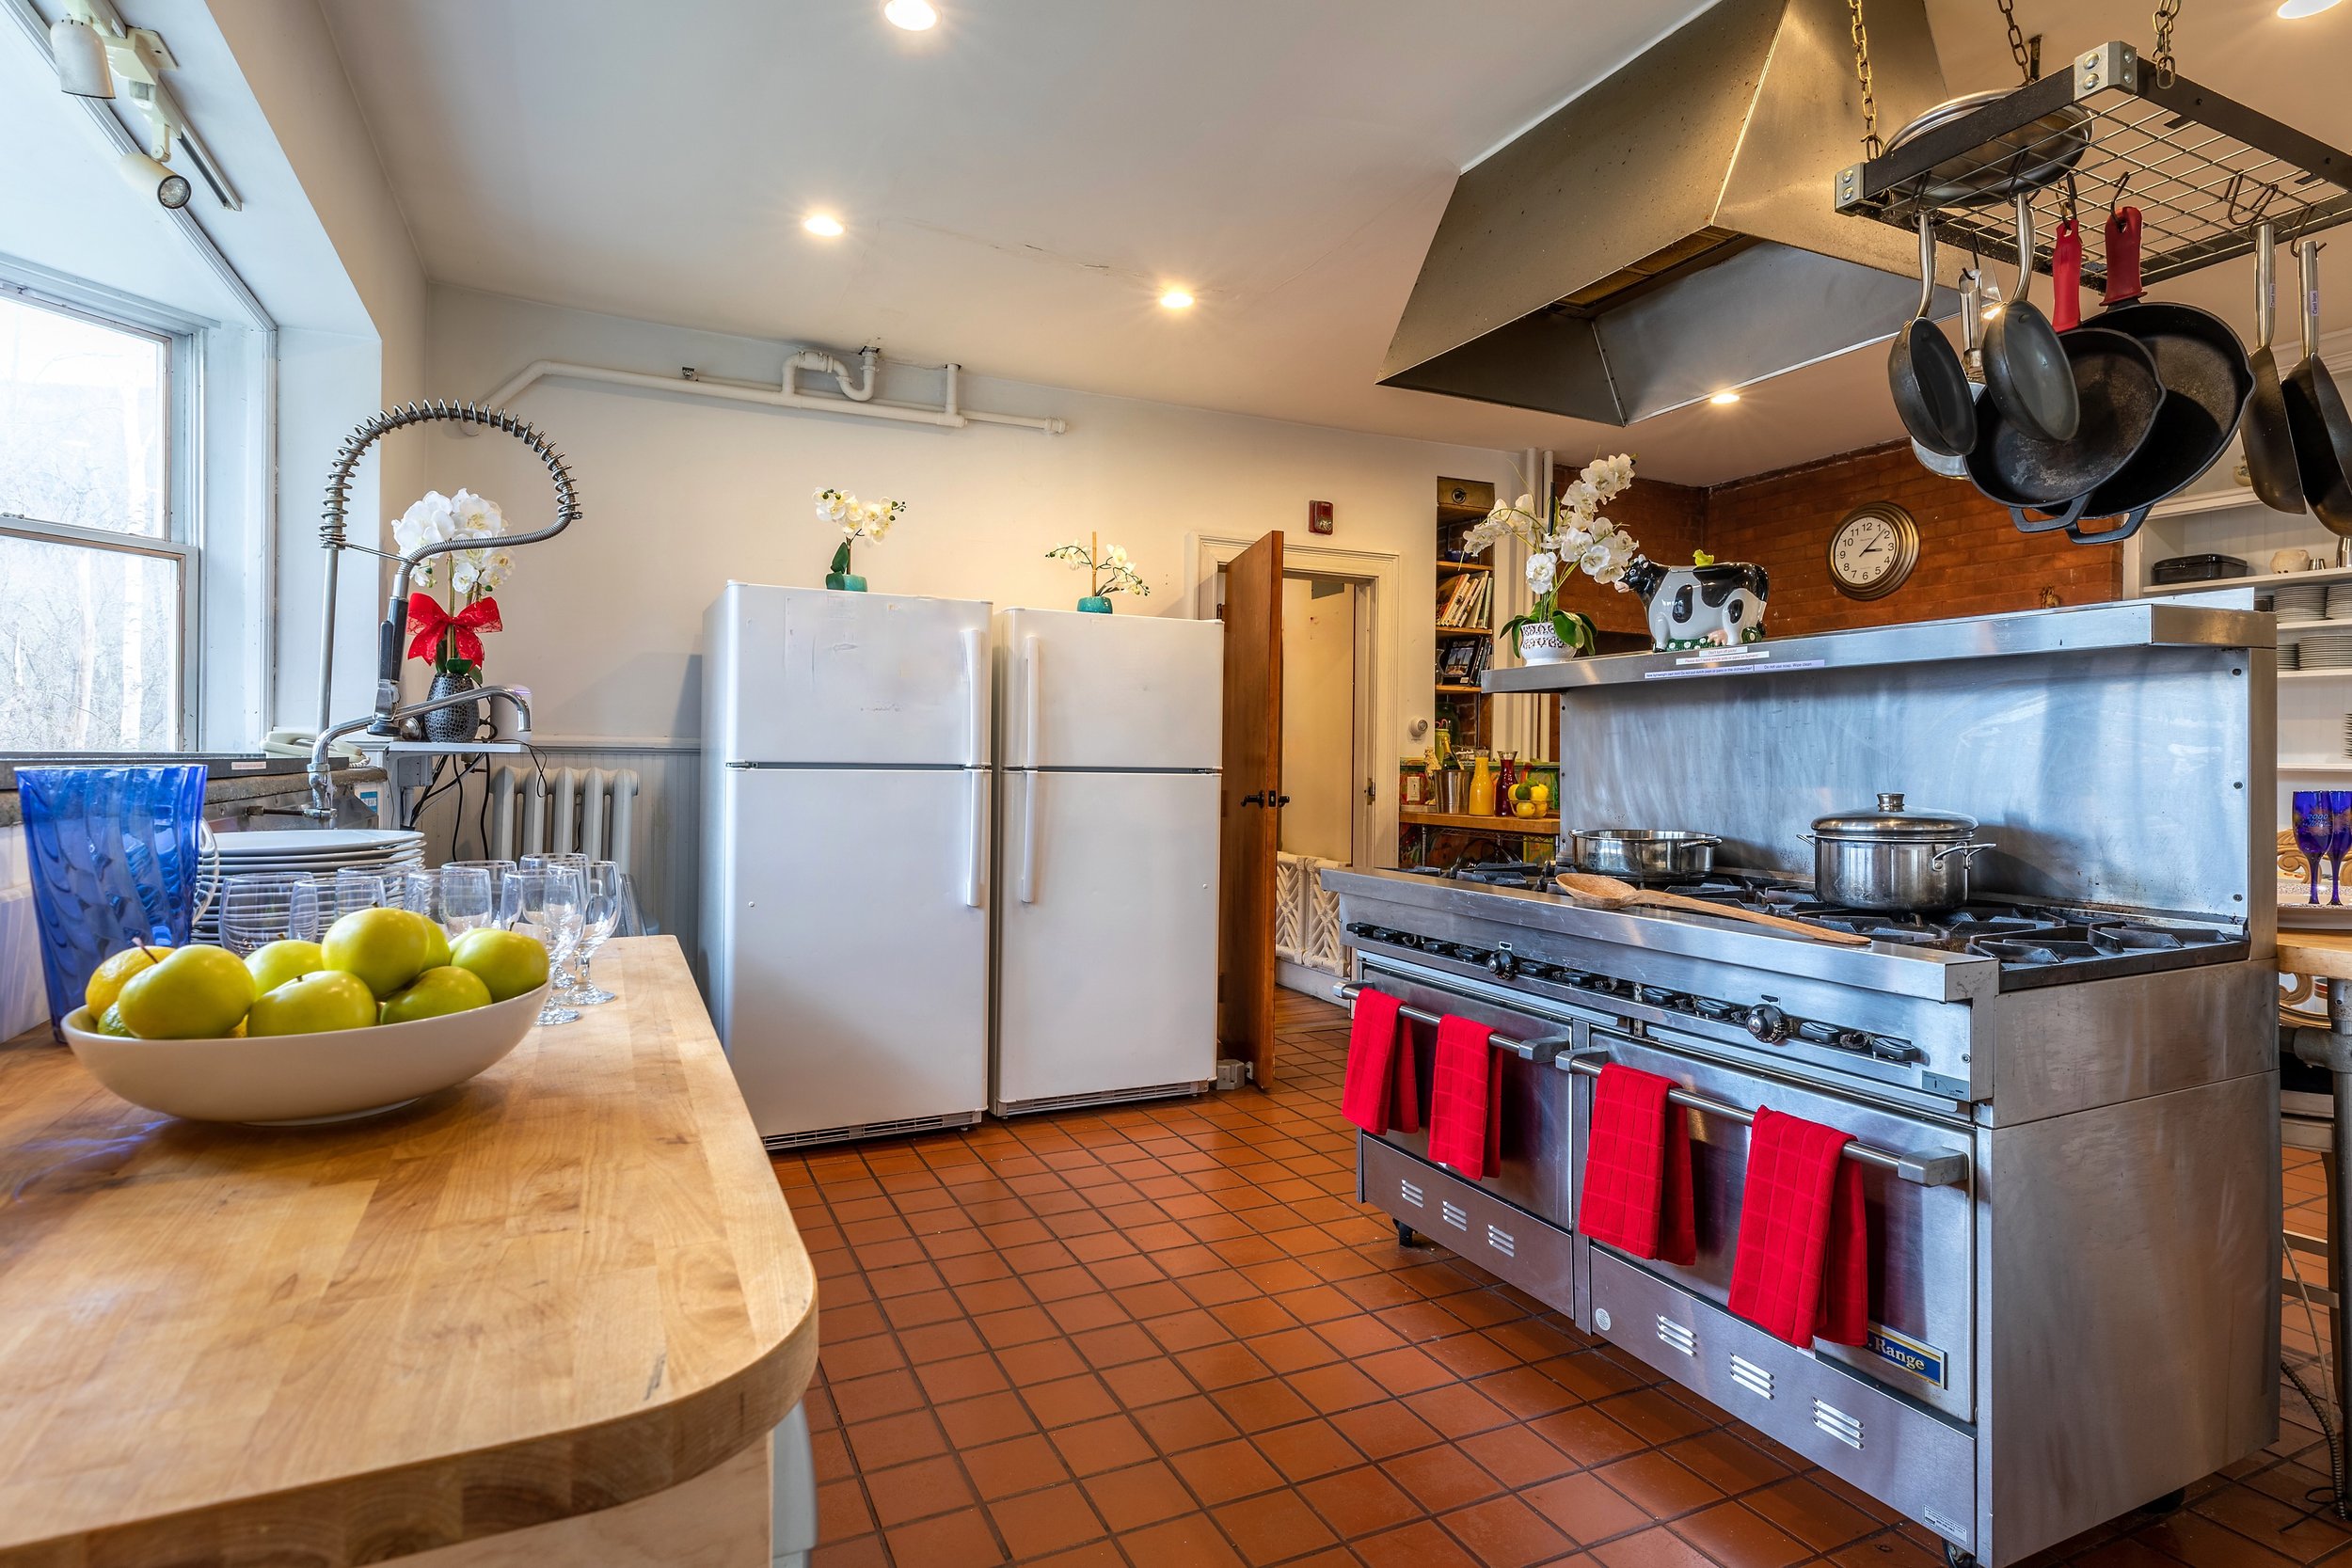 Kitchen_facing_oven_fridge_Battenkill_Valley_Mansion.jpeg